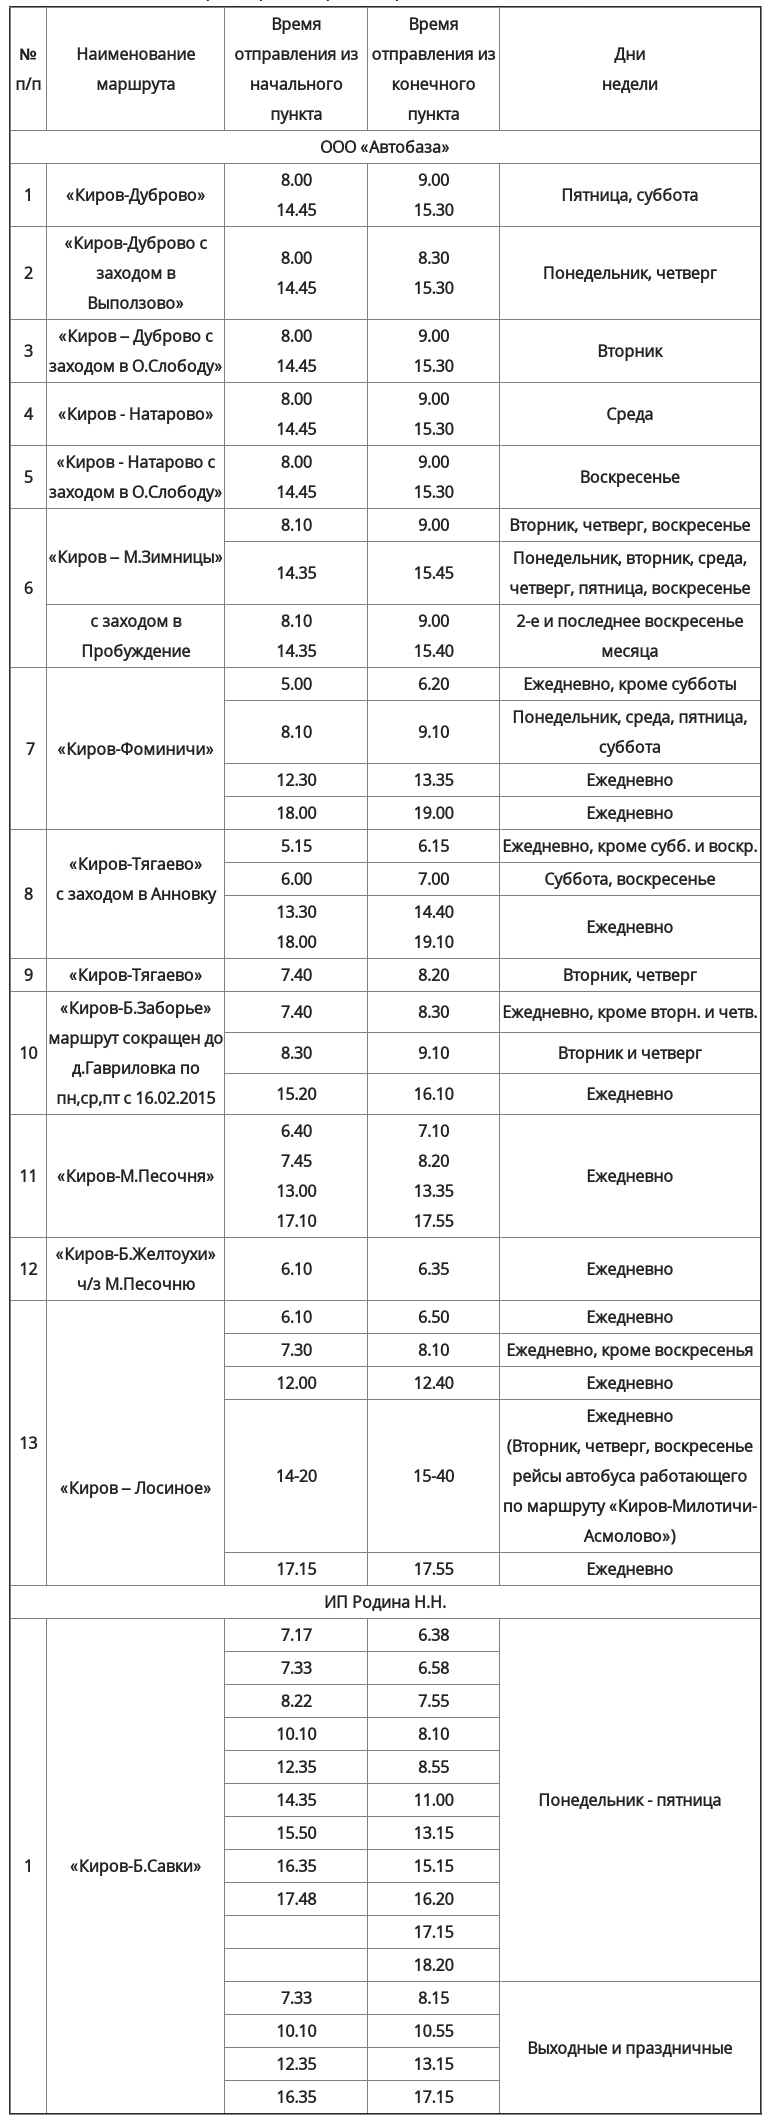 Расписание движения автобусов по муниципальным пригородным маршрутам муниципального района